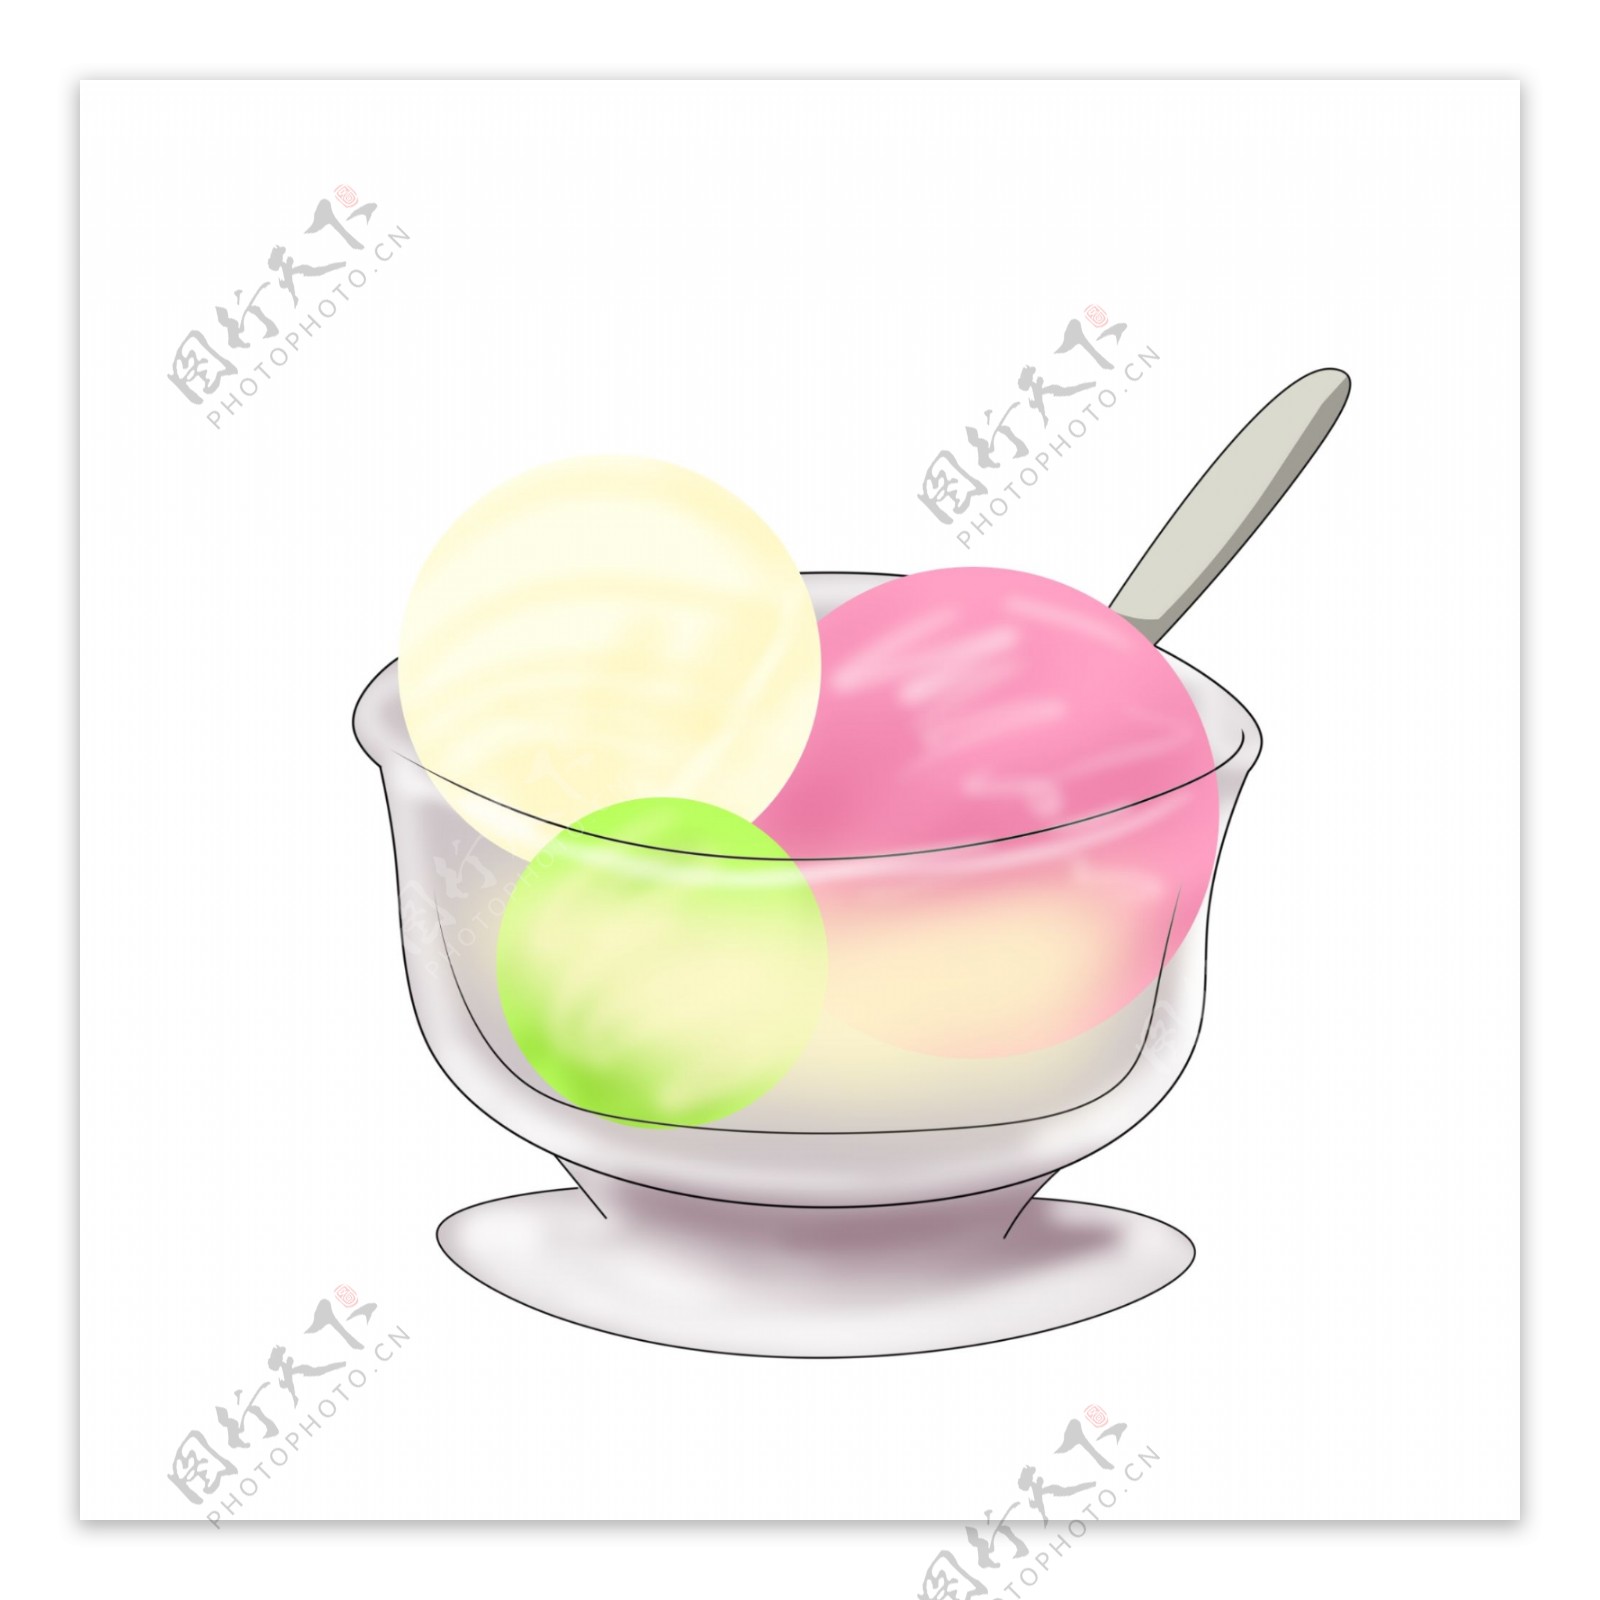 一碗三色冰淇淋球